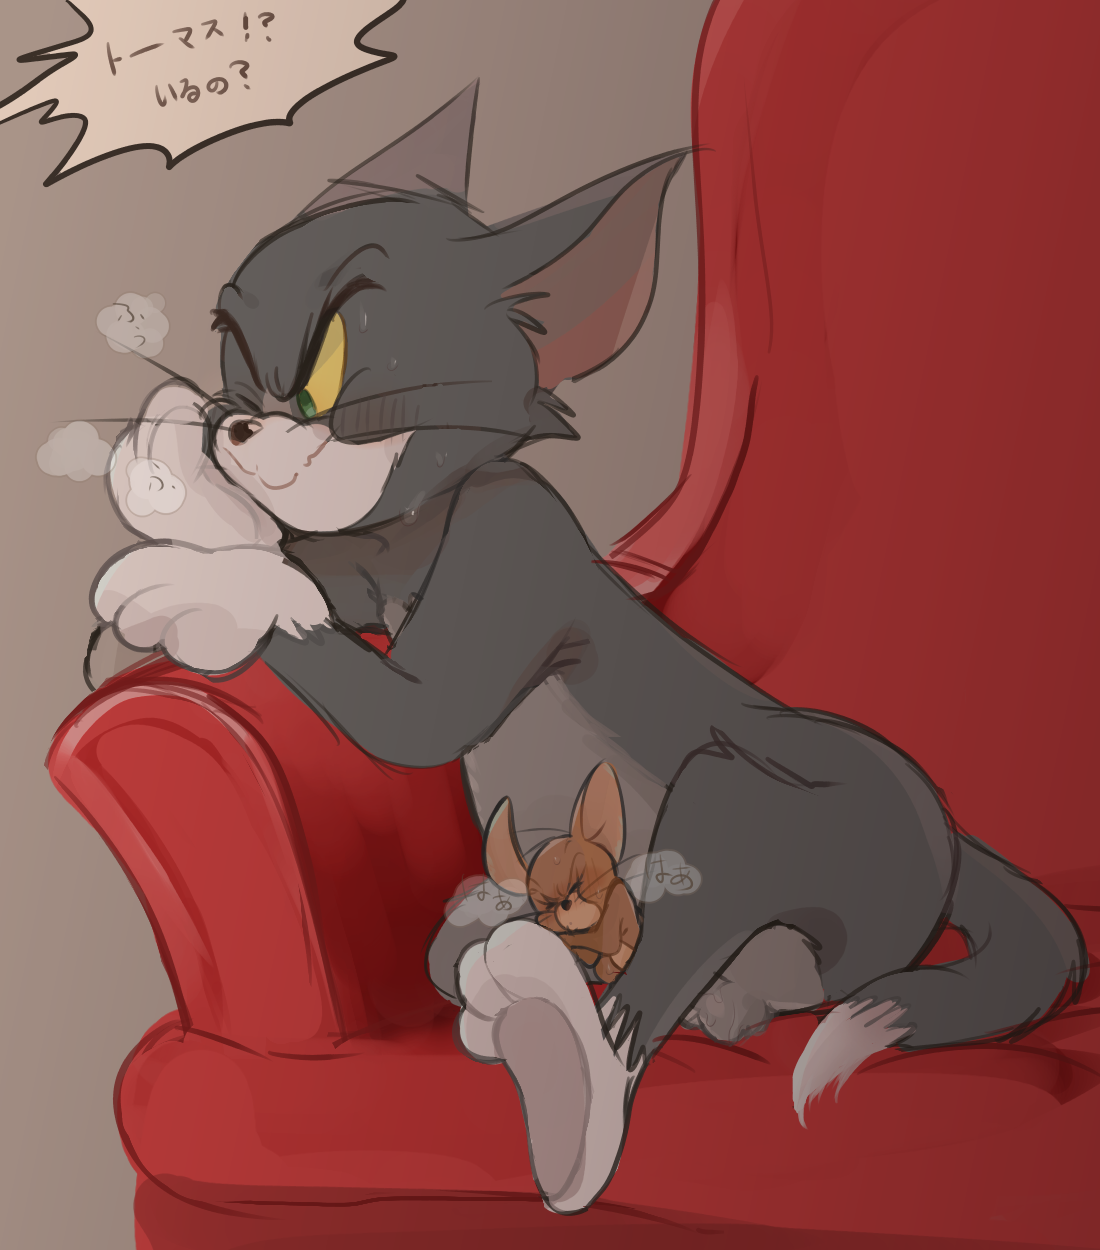 Tom och Jerry gay Porr